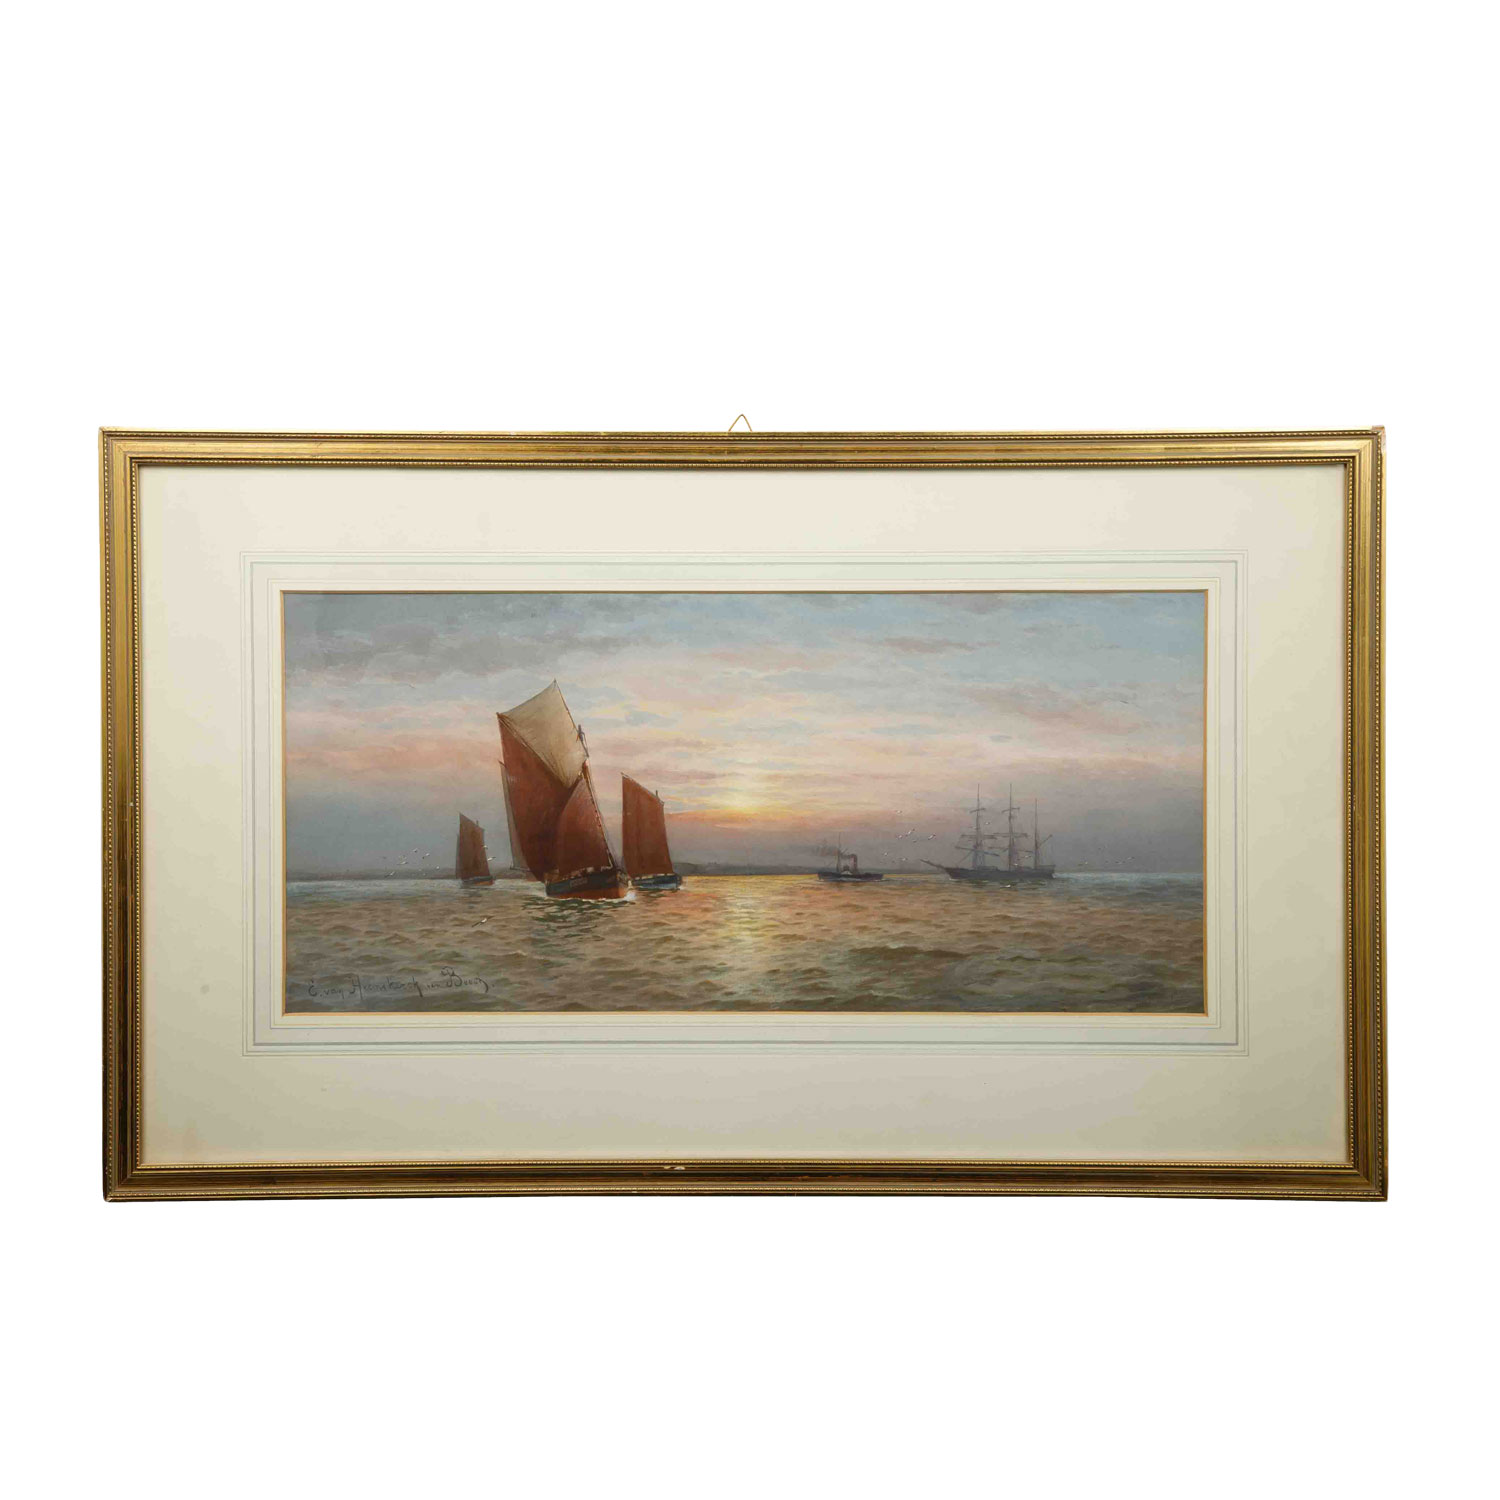 VAN HEEMSKERCK VAN BEEST, JACOB EDUARD (1828-1894), “Segelschiffe in Abendstimmung“, - Image 2 of 4